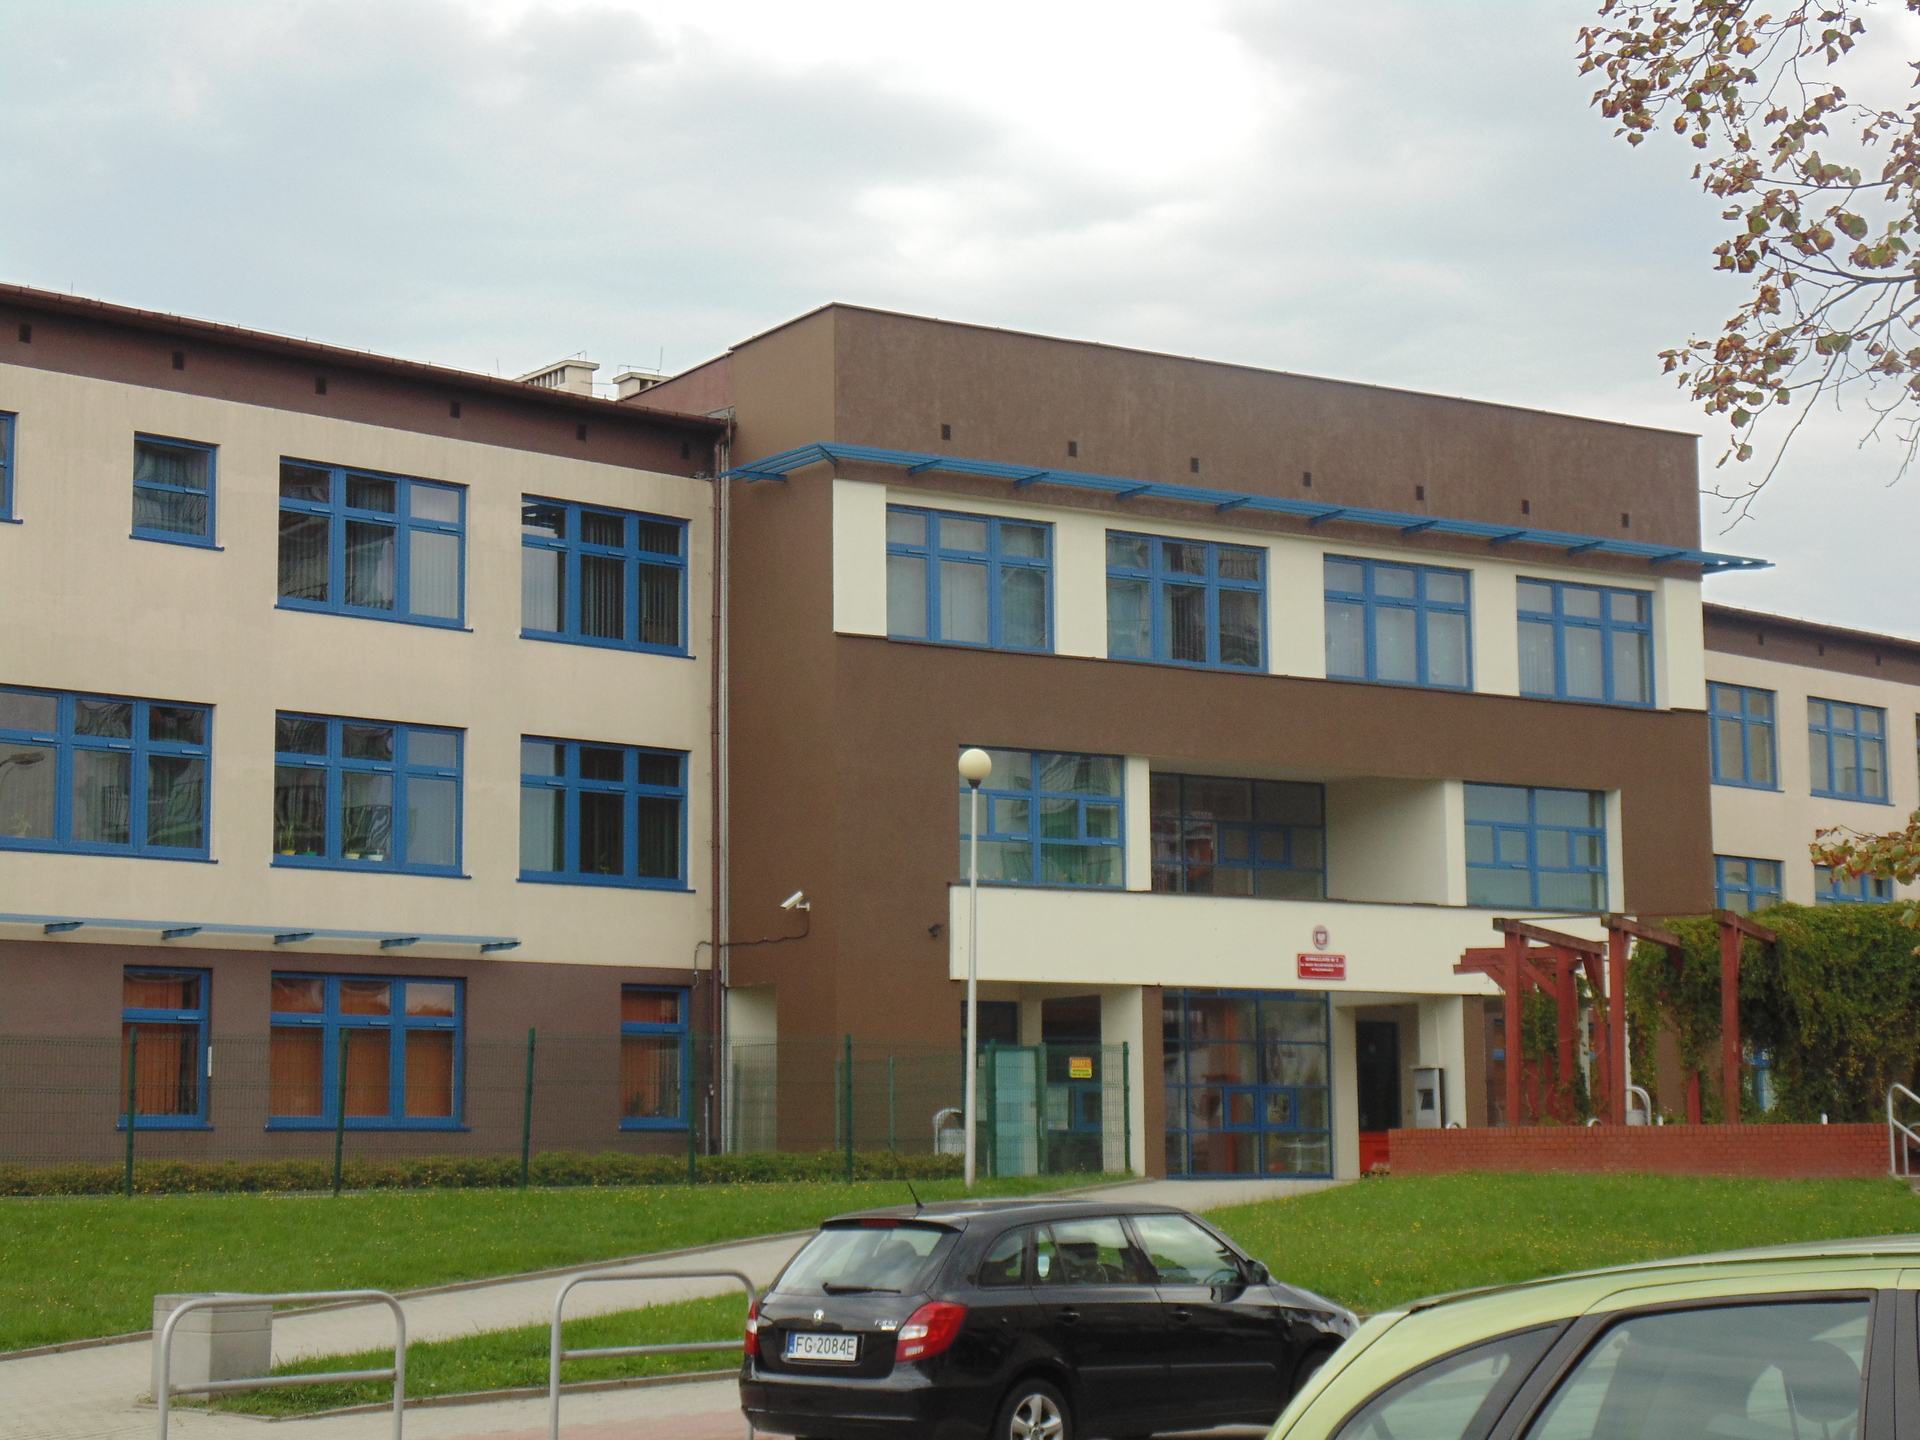 Pokażą „czwórkę” – nową szkołę podstawową w Polkowicach